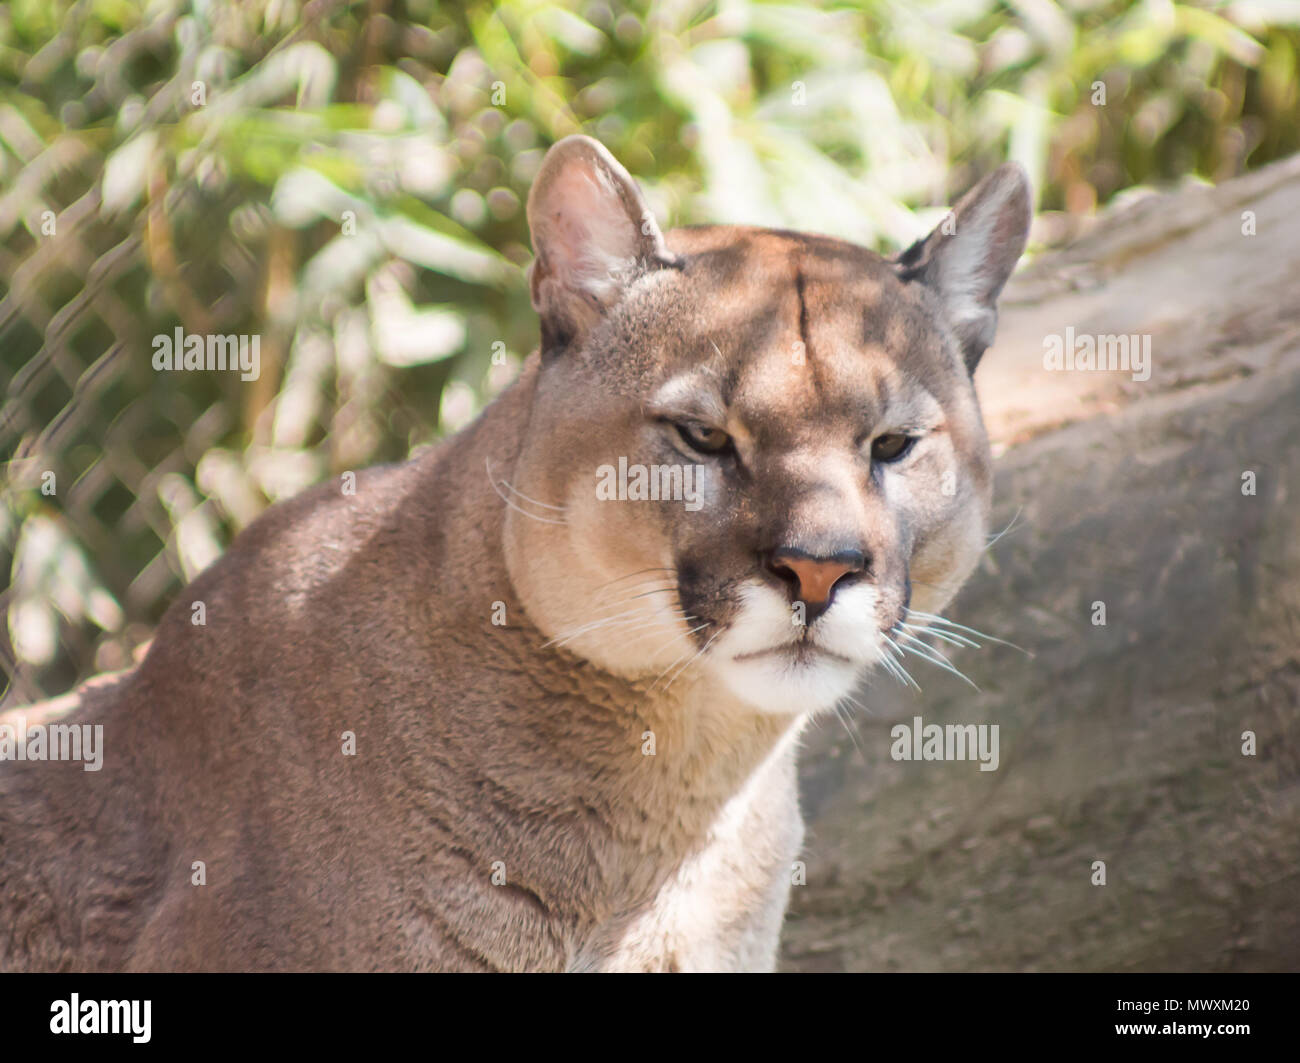 de vida silvestre Puma, puma, sentado en el parque zoológico, el gran gato salvaje en la naturaleza, el hábitat, el puma (Puma concolor), conocido como el león de montaña,